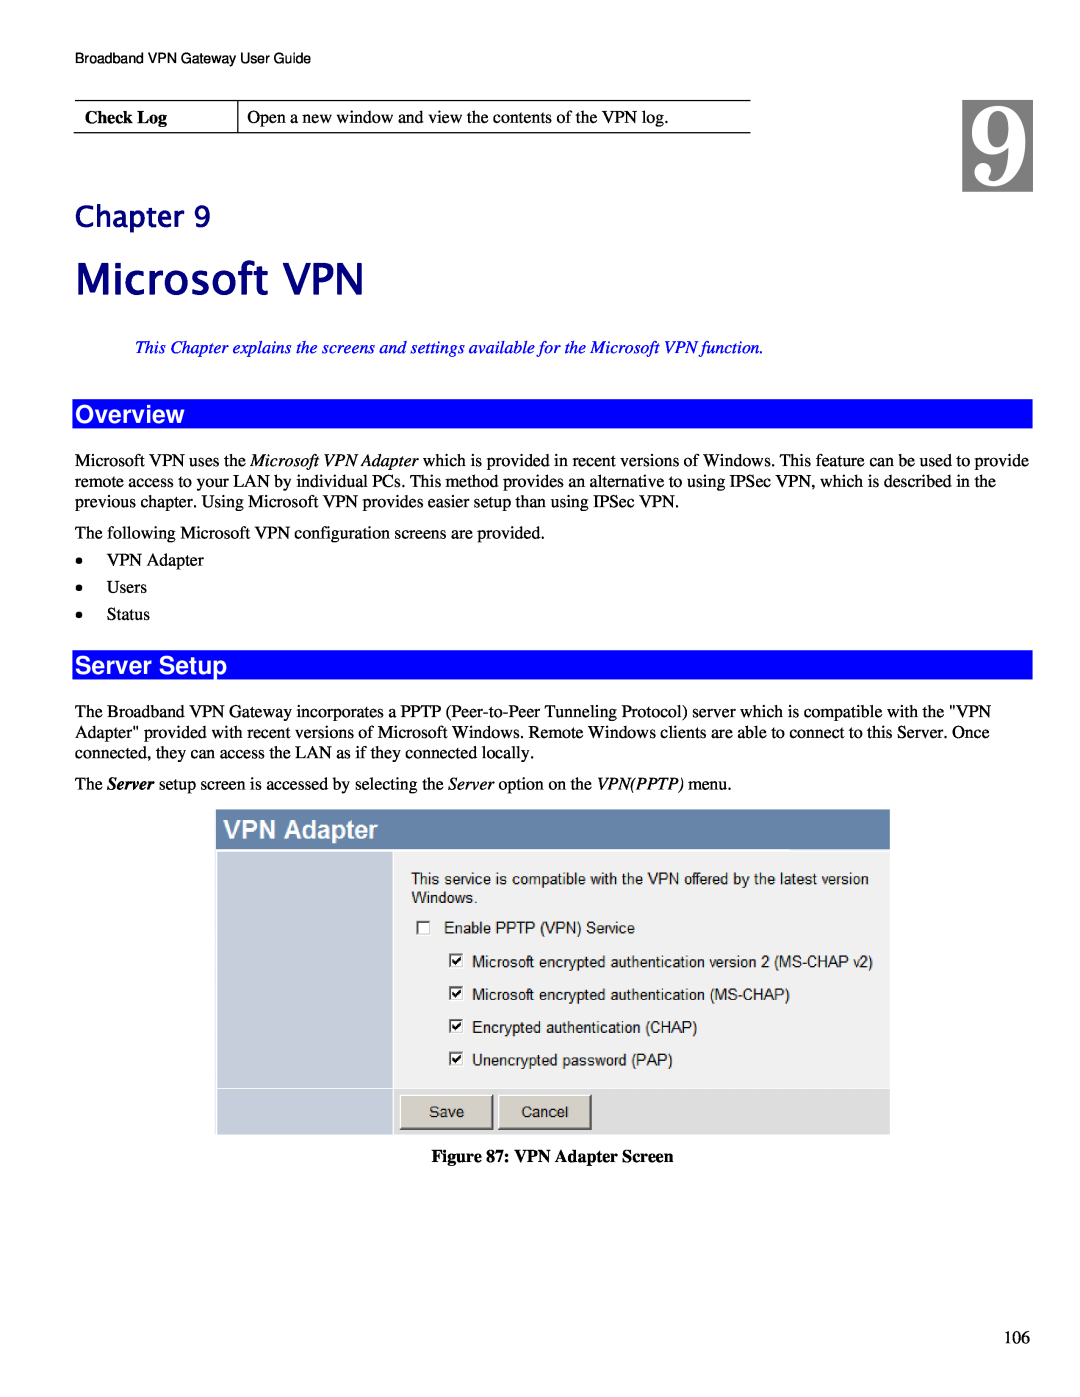 TRENDnet TW100-BRV324 manual Microsoft VPN, Server Setup, Chapter, Overview 